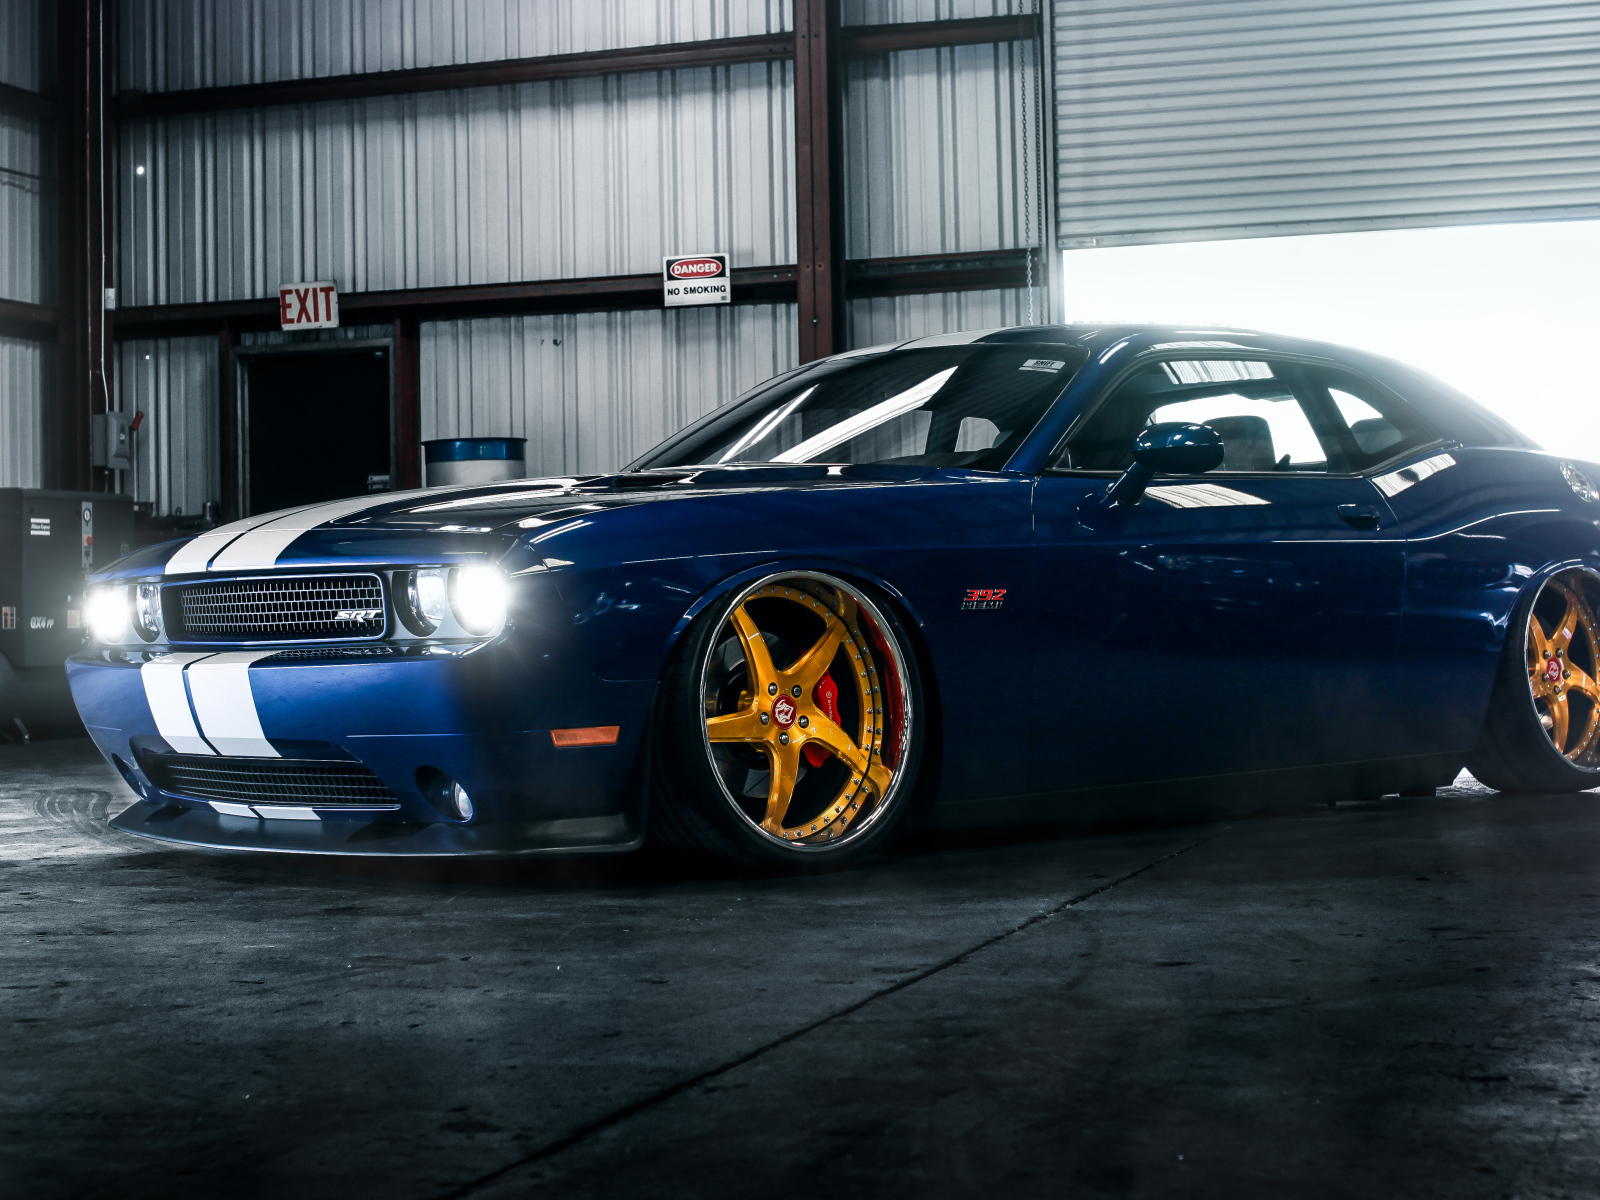 Синий спортивный автомобиль Dodge Challenger SRT 392 в гараже